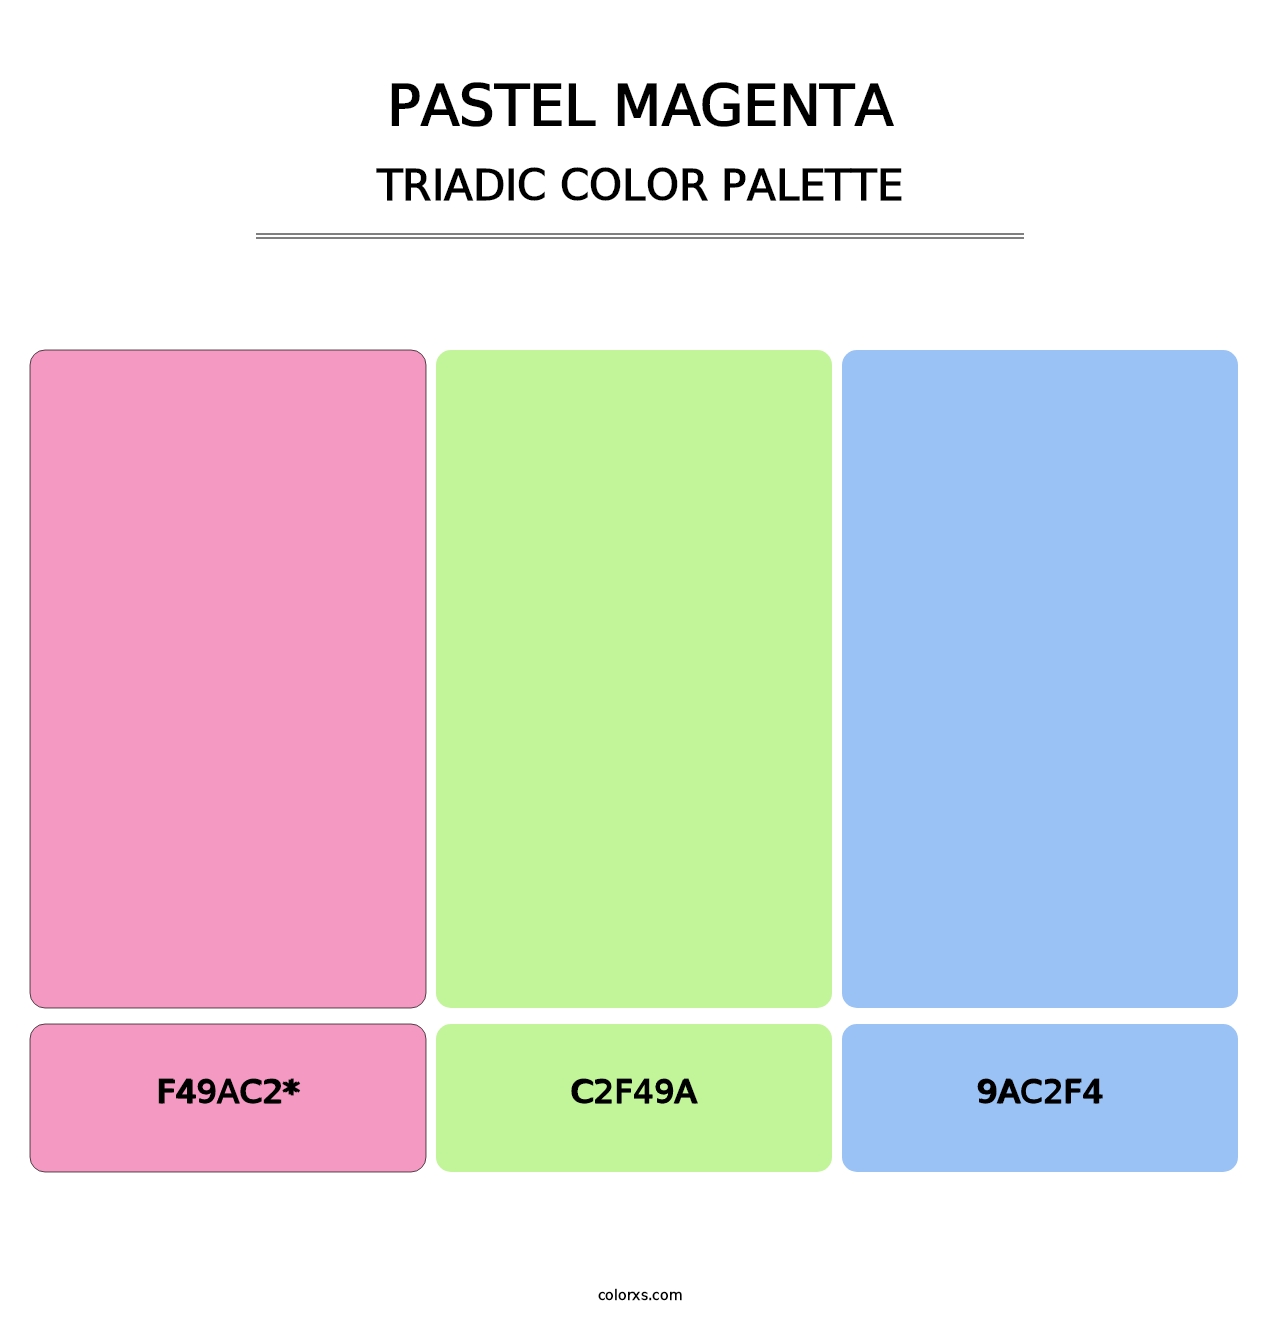 Pastel Magenta - Triadic Color Palette